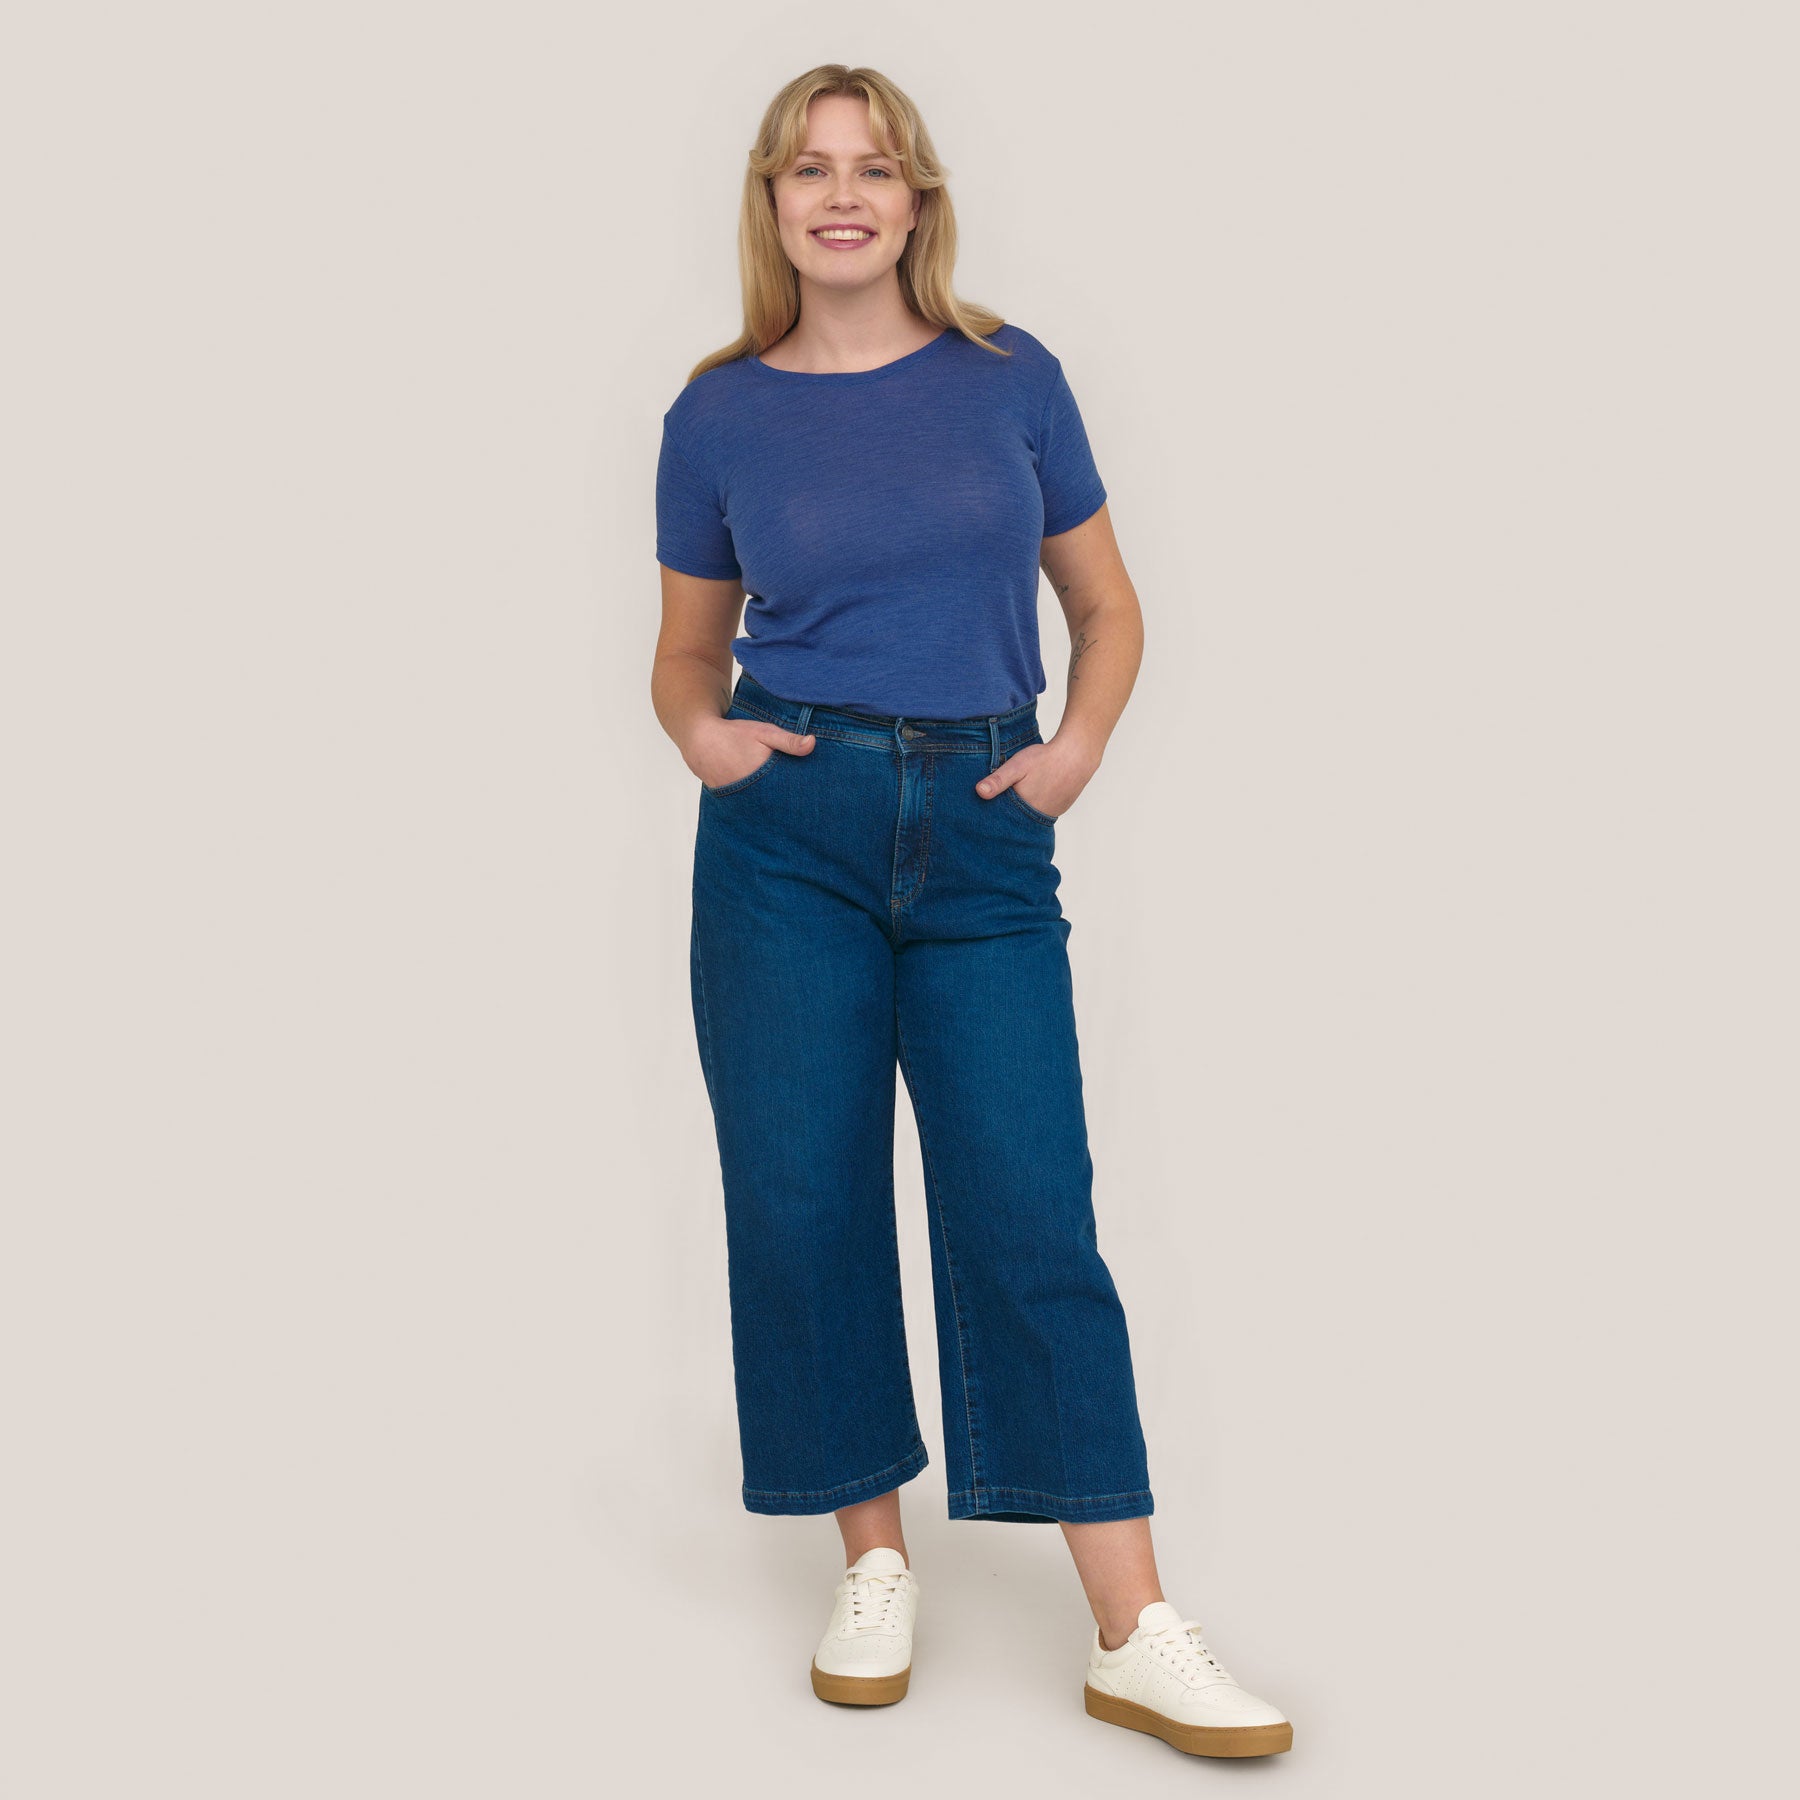 Sininen Naisten Klassikko t-paita yhdistettynä sinisiin farkkuihin ja valkoisiin tennareihin.